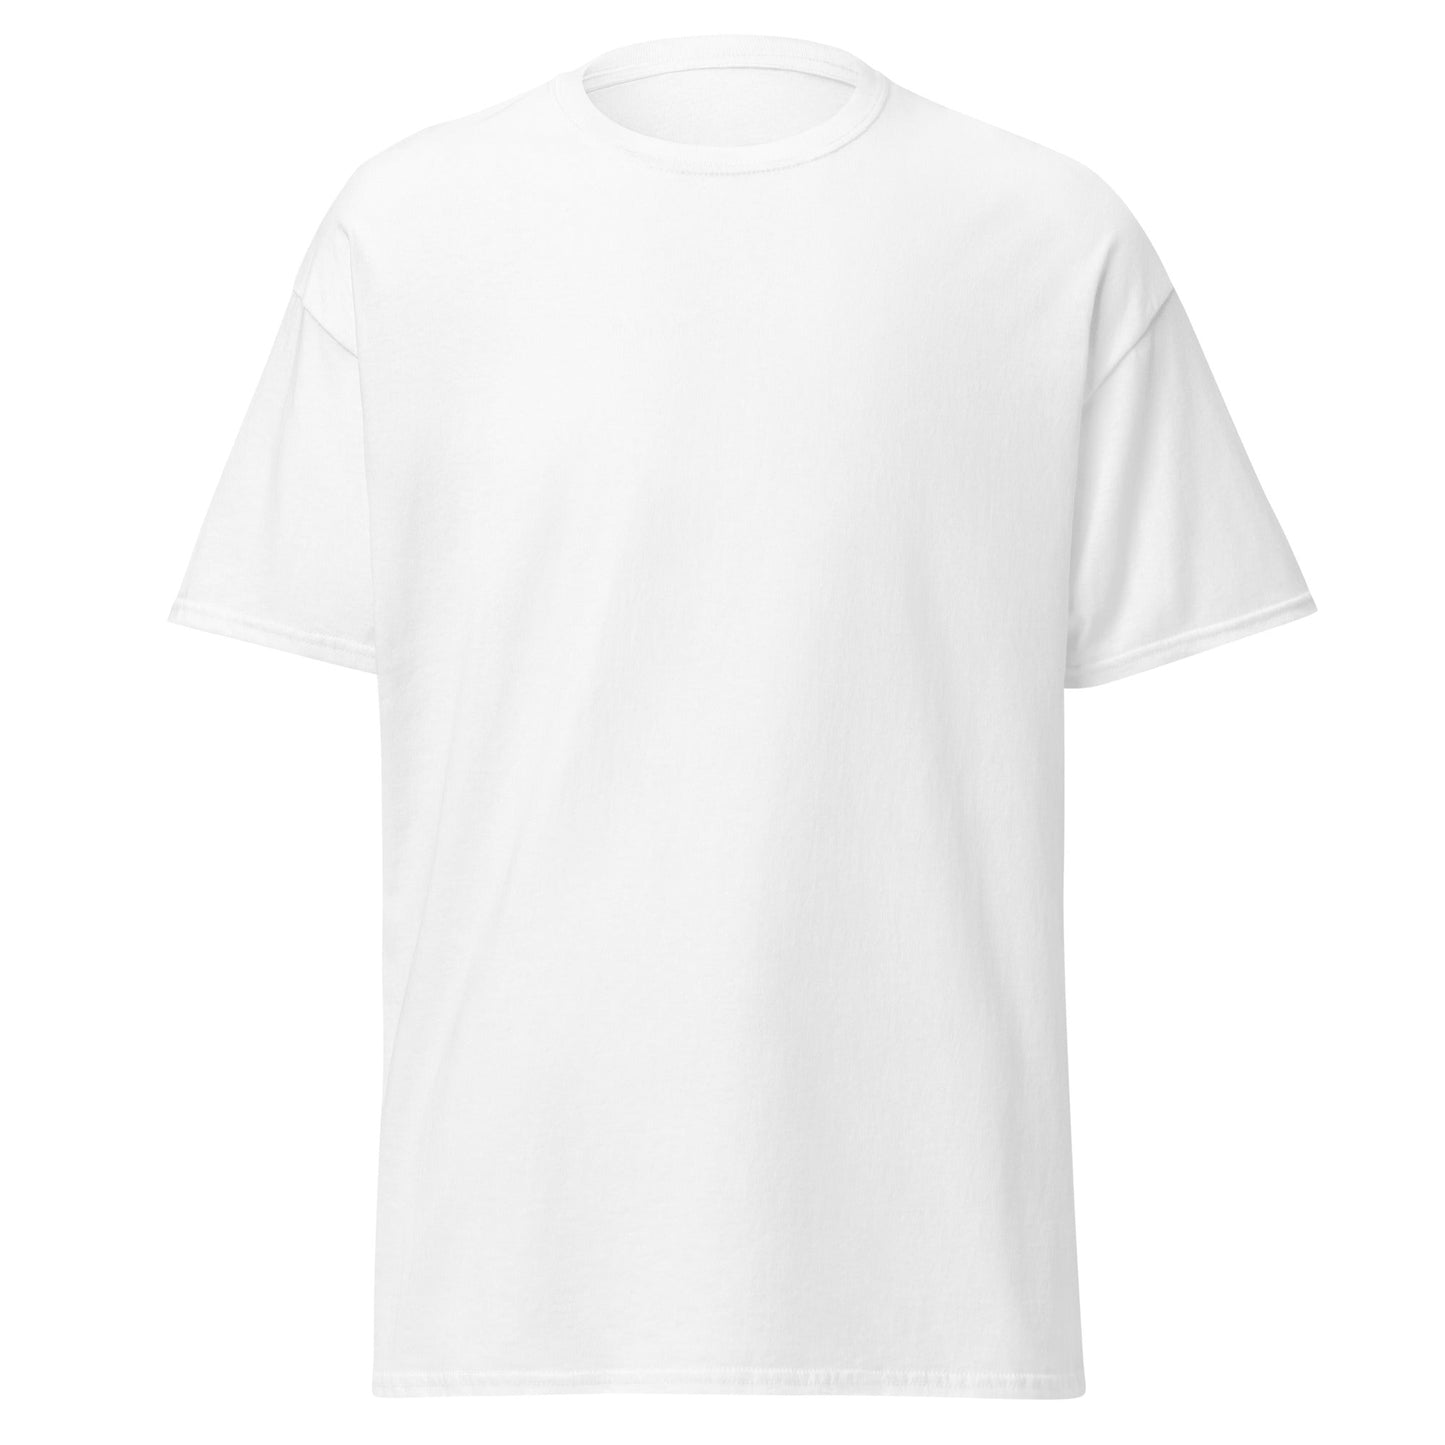 Descubre la Camiseta Blanca de Modal , una prenda de elegancia y comodidad en color blanco. Ideal para cualquier ocasión. envíos a Guatemala